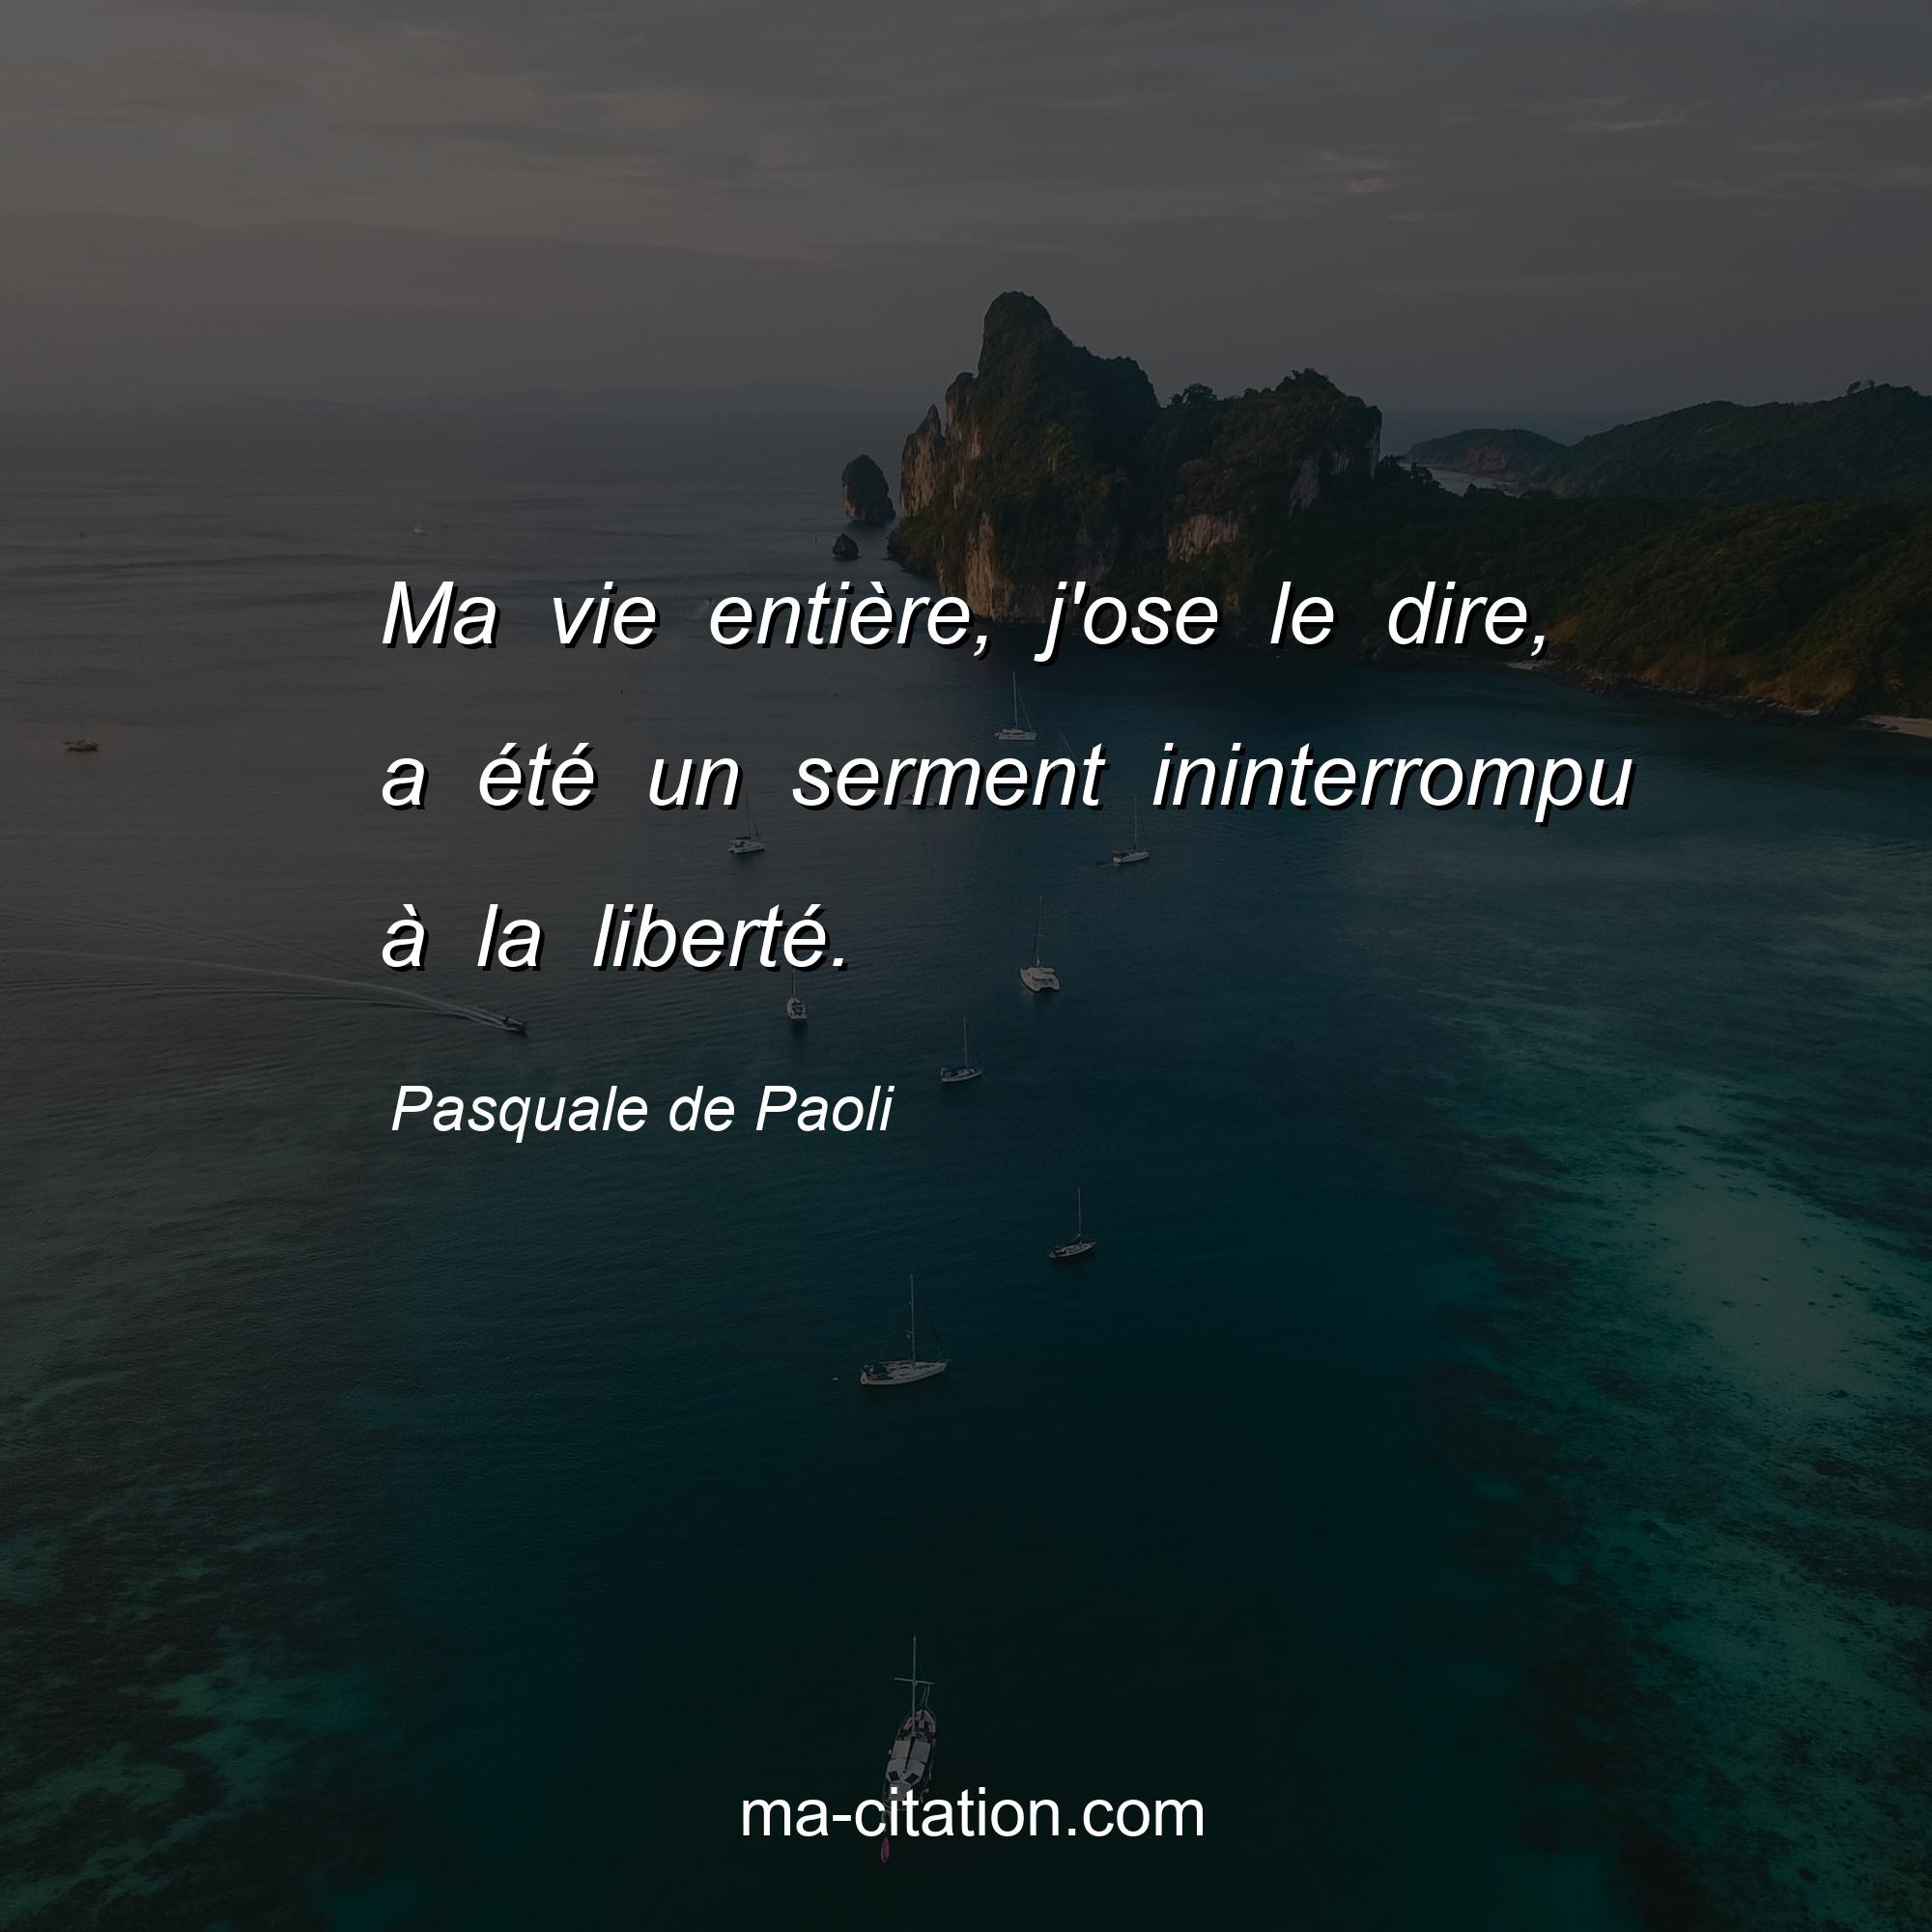 Pasquale de Paoli : Ma vie entière, j'ose le dire, a été un serment ininterrompu à la liberté.